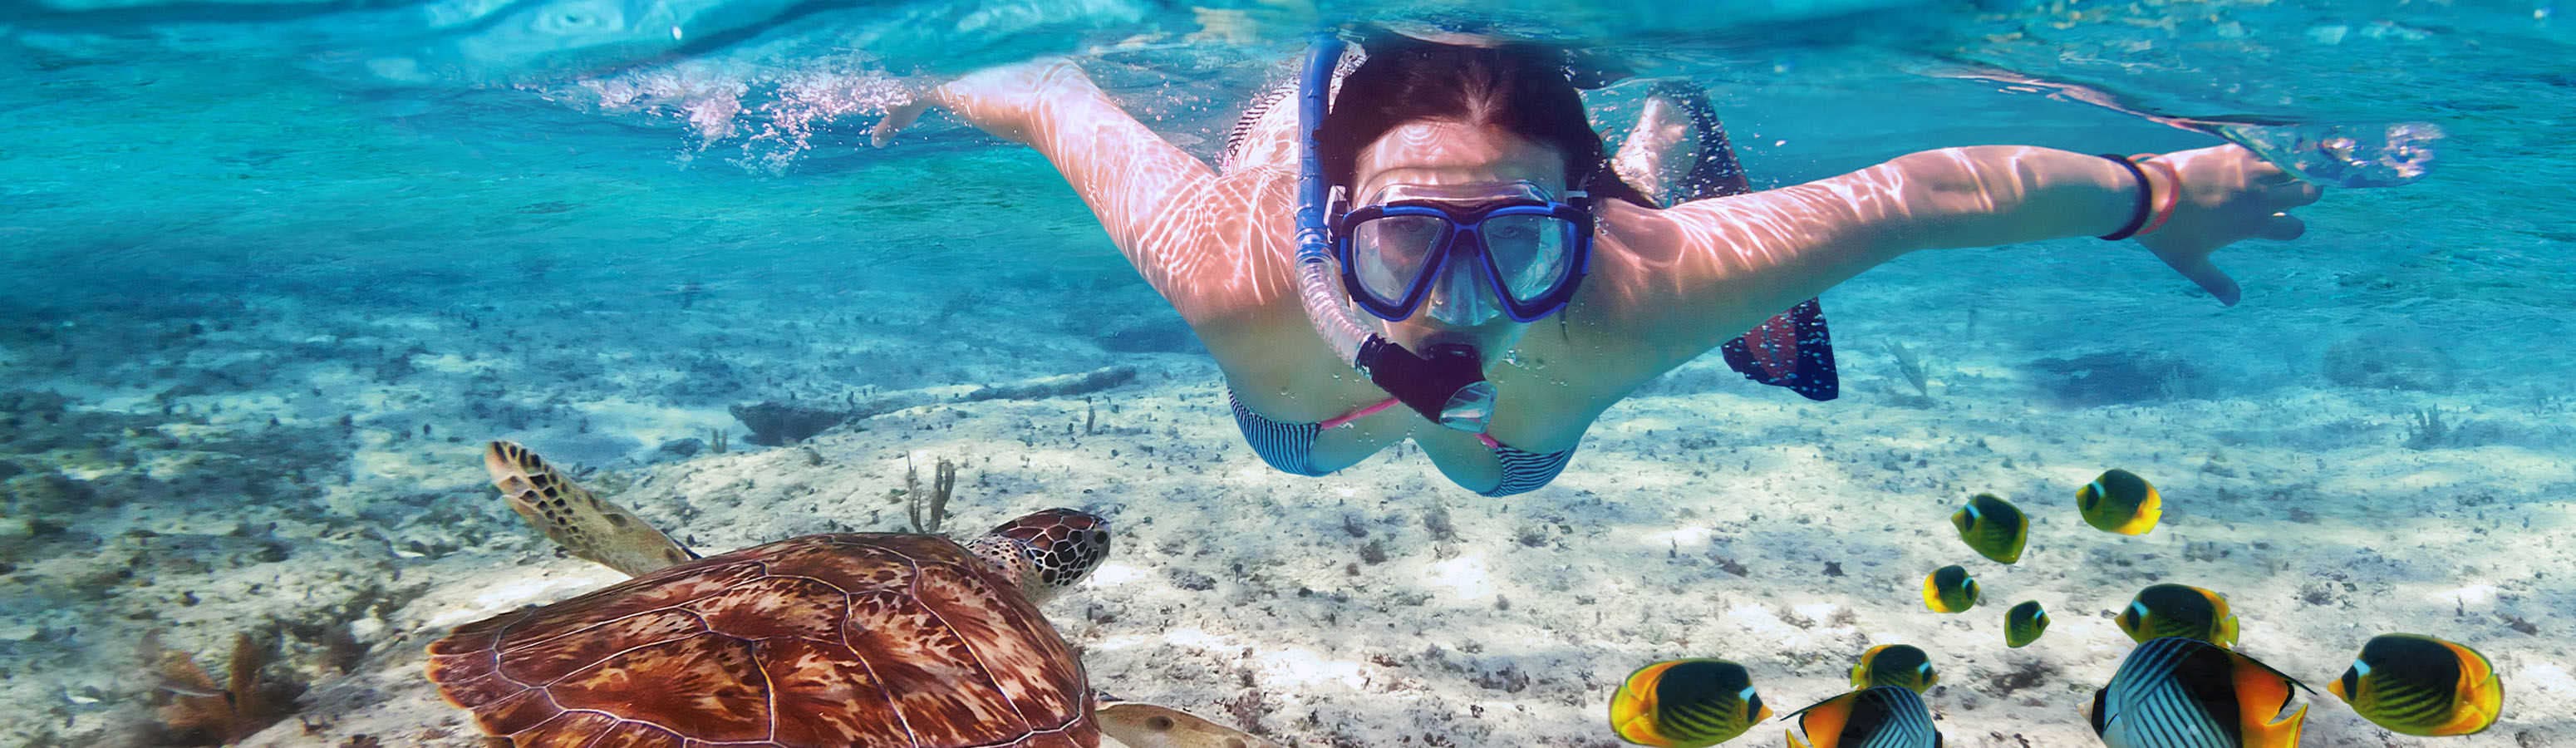 Egitto – un paradiso per i subacquei e gli amanti dello snorkeling